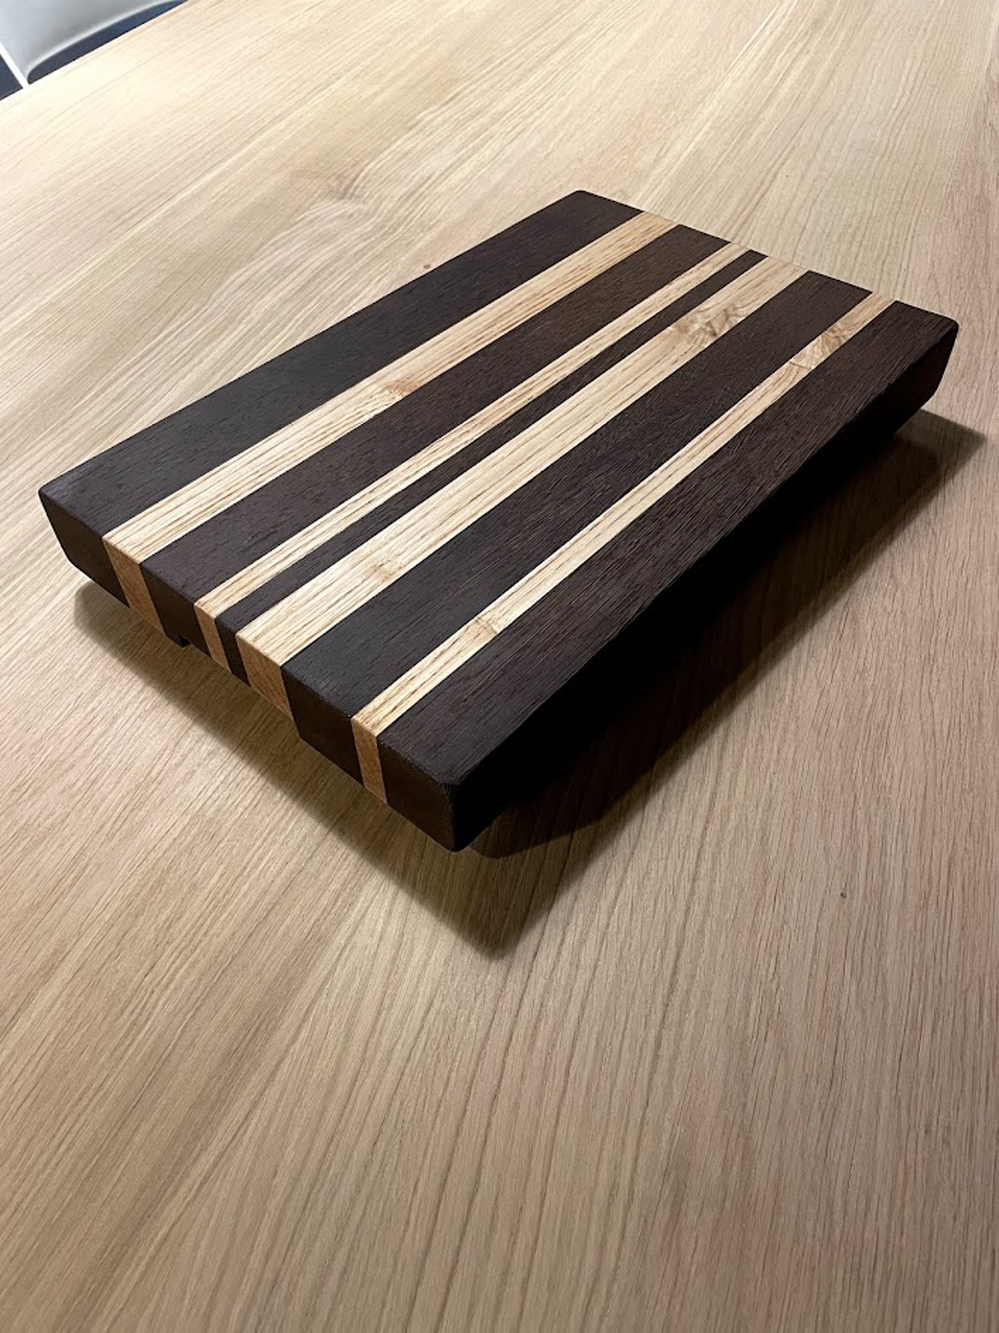 Kitchencraft industriale cucina artigianale in legno a tagliere tagliere Beige/Grey Legno 48 x 32 x 5.2 cm 